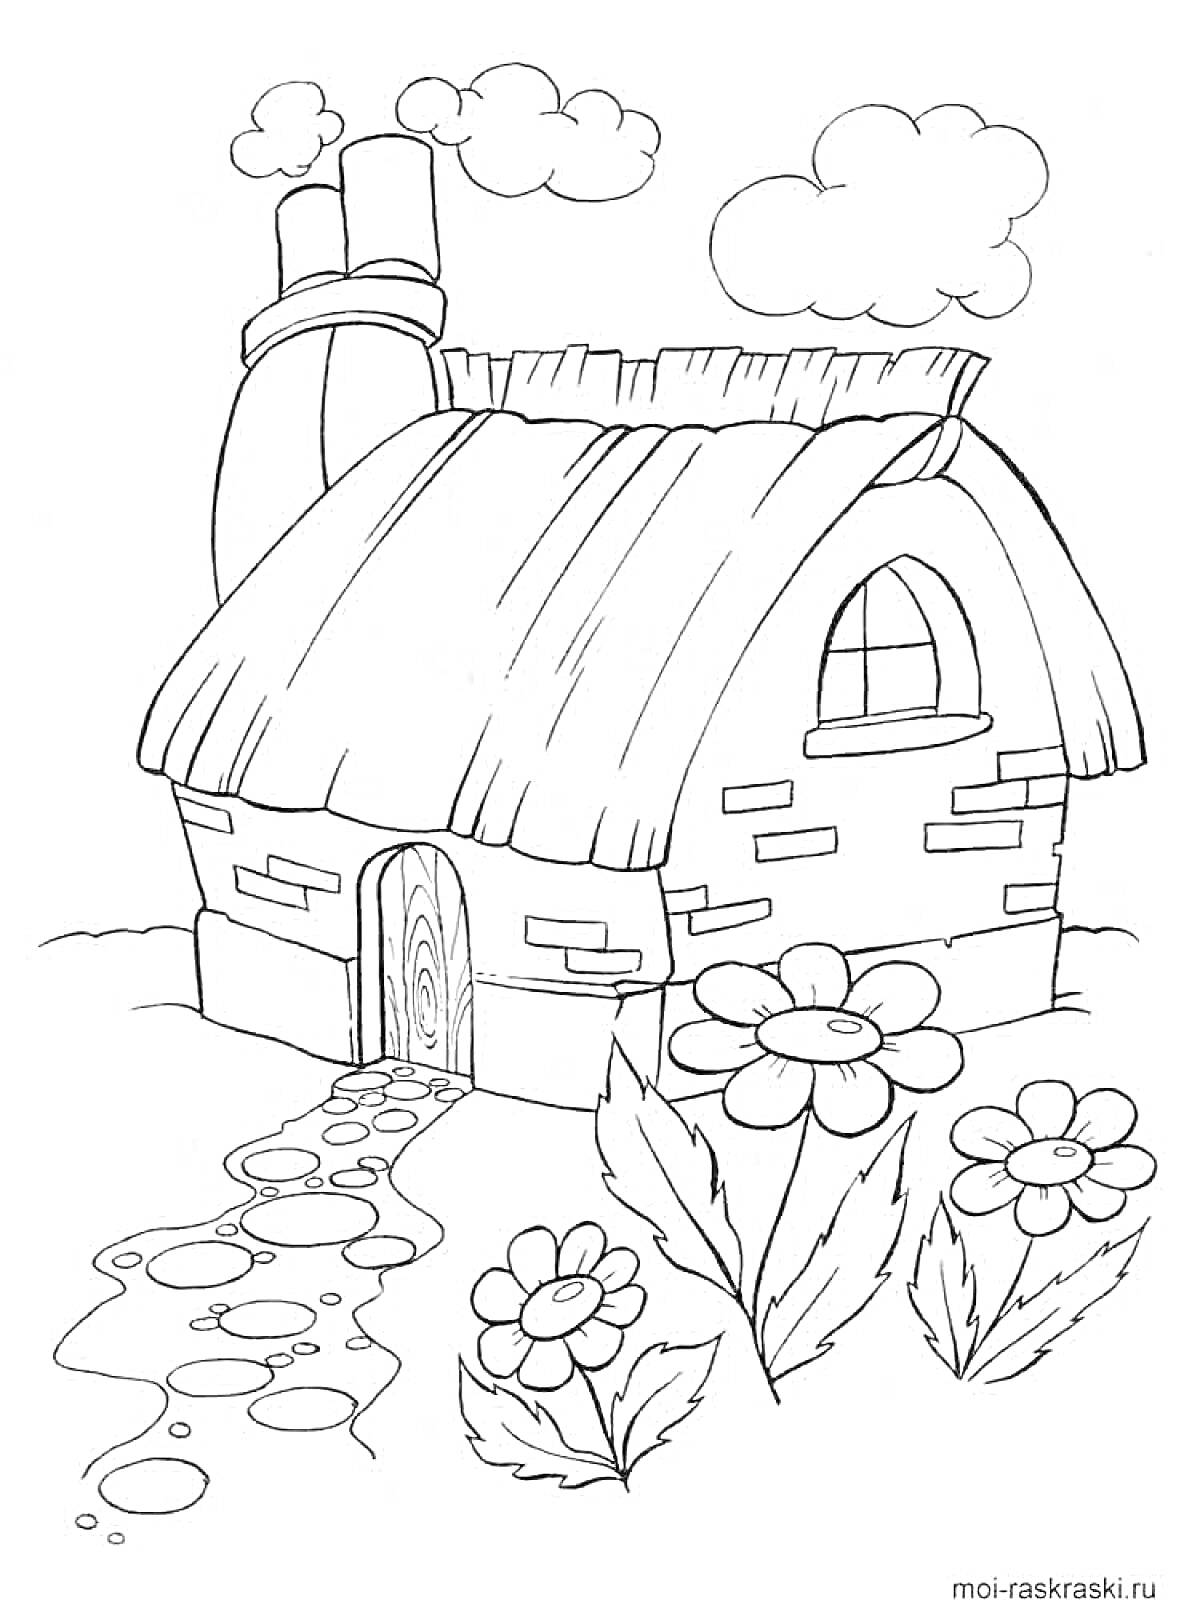 Раскраска Домик с соломенной крышей, облака, цветы и каменная дорожка